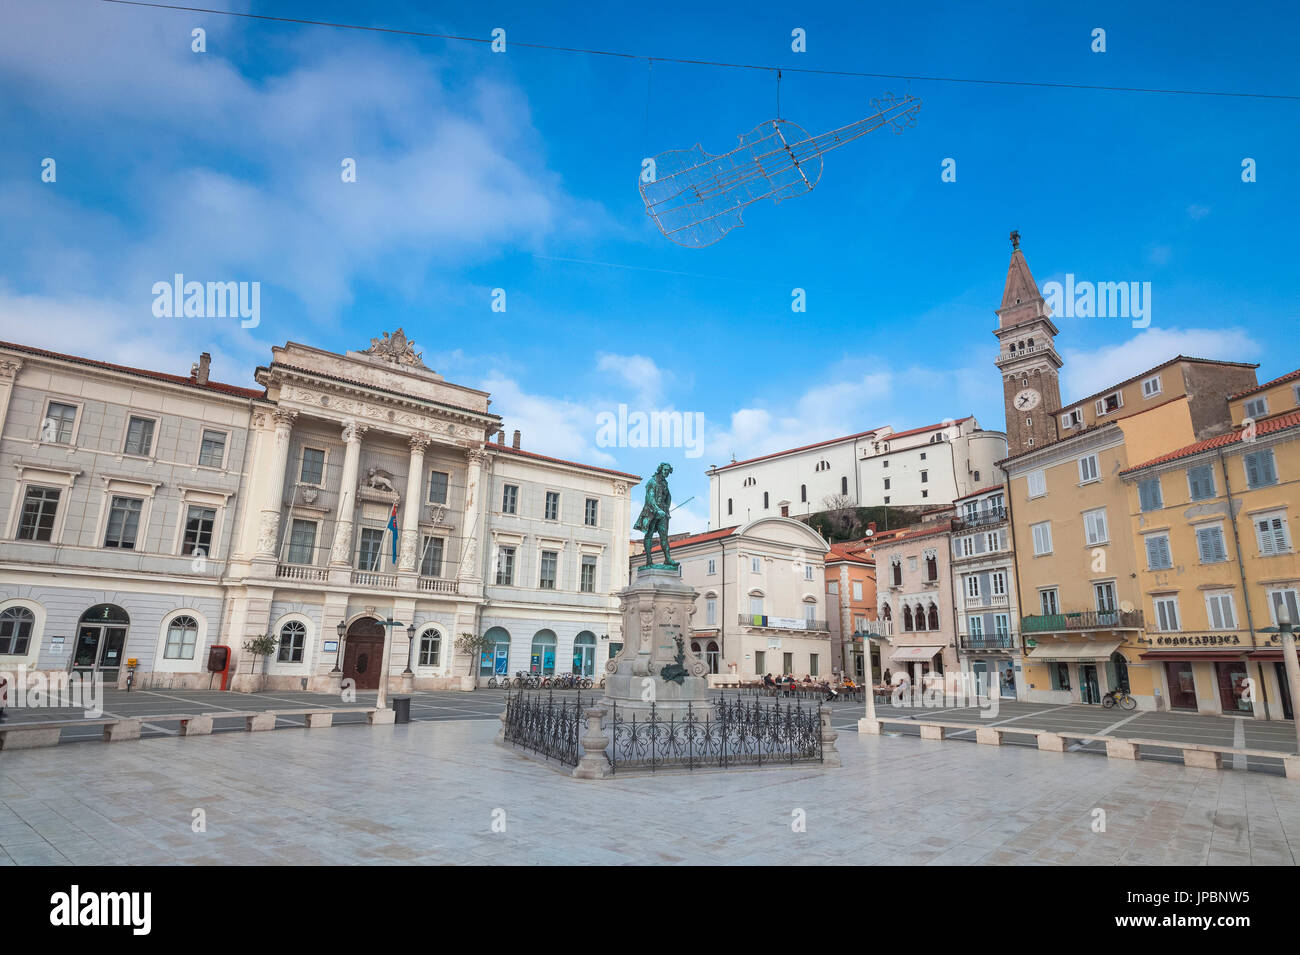 Europe, Slovenia, Istria. Tartini Square, Piran Stock Photo